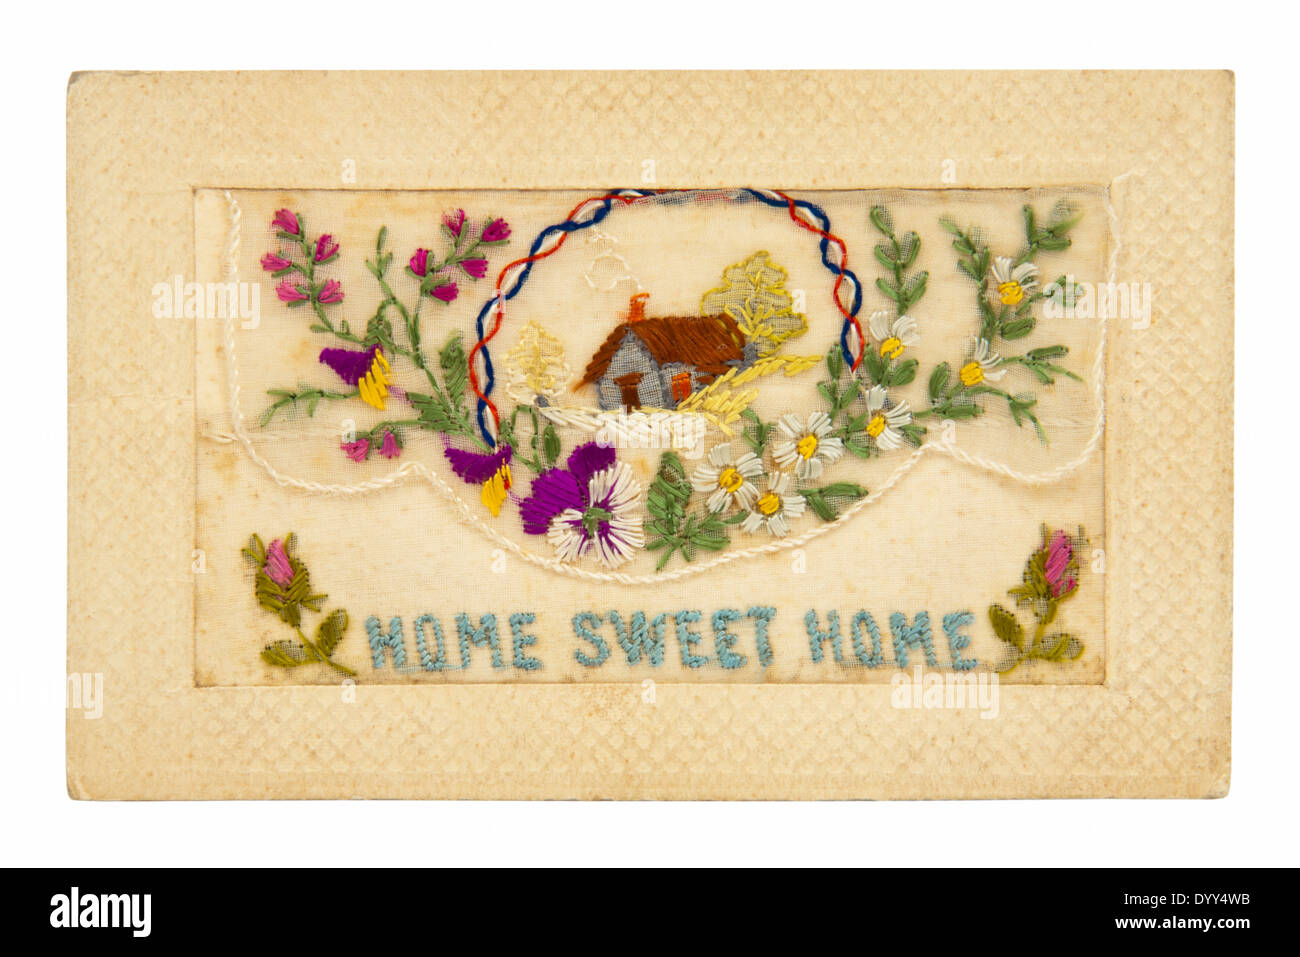 Vintage WW1 bordado tarjeta de felicitación con el mensaje "Home Sweet Home" Foto de stock